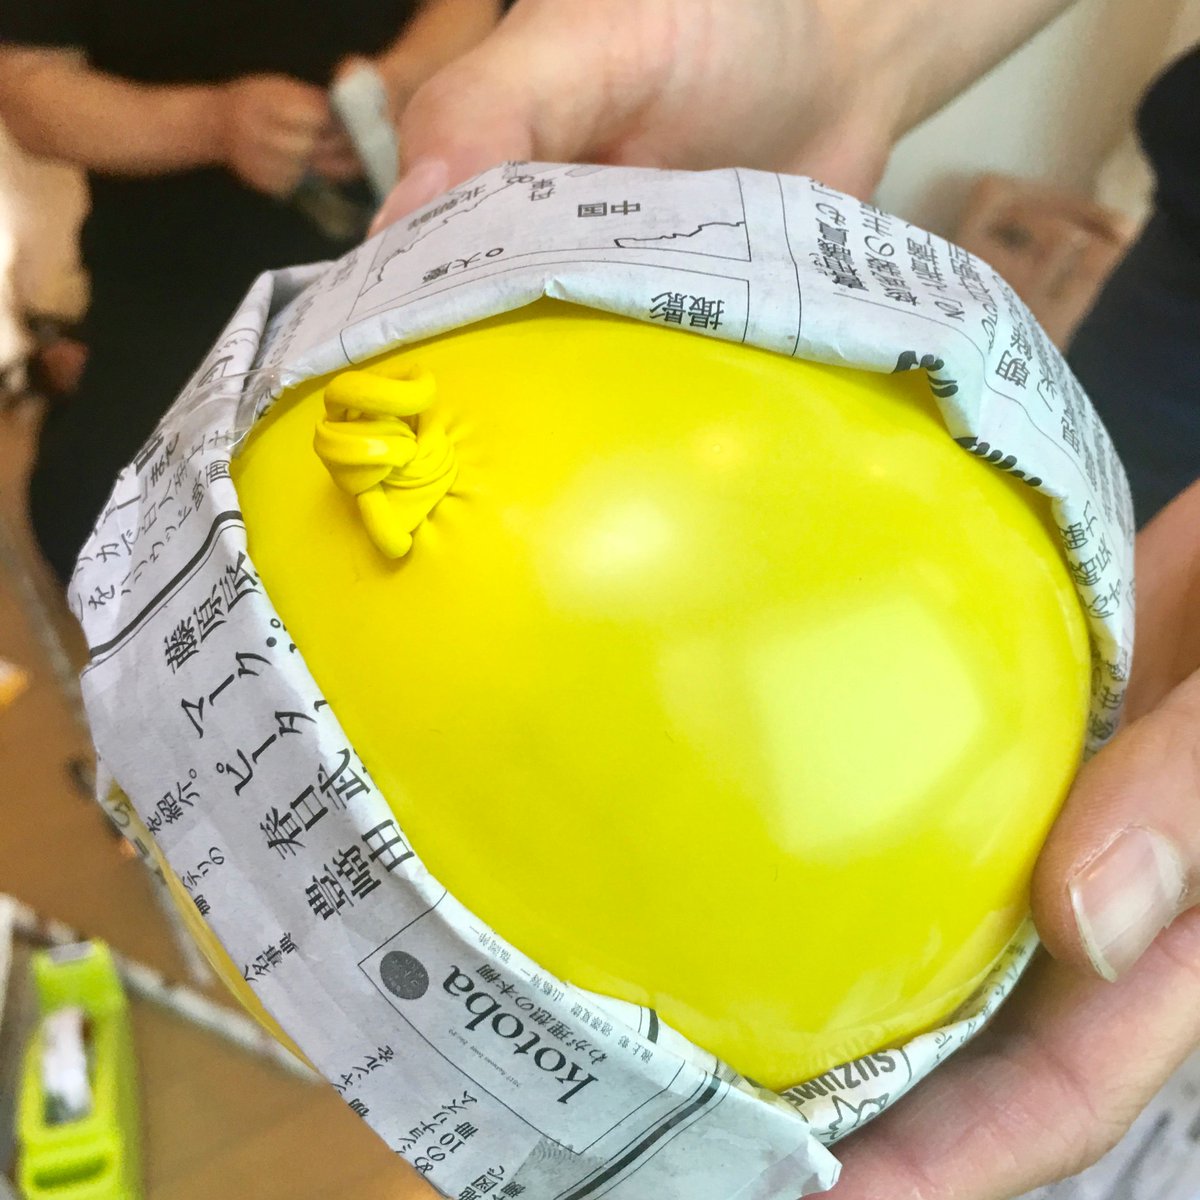 ぱぱもちゃん Papamo School در توییتر 簡単に手作り 新聞紙 風船でボール作り 新聞紙で3本輪っかを作り 中に風船を膨らますと 手作りボールができるんです キッズスタッフ応募の方は T Co Zydqfpgznh Papamo あそび こども 保育士 幼稚園